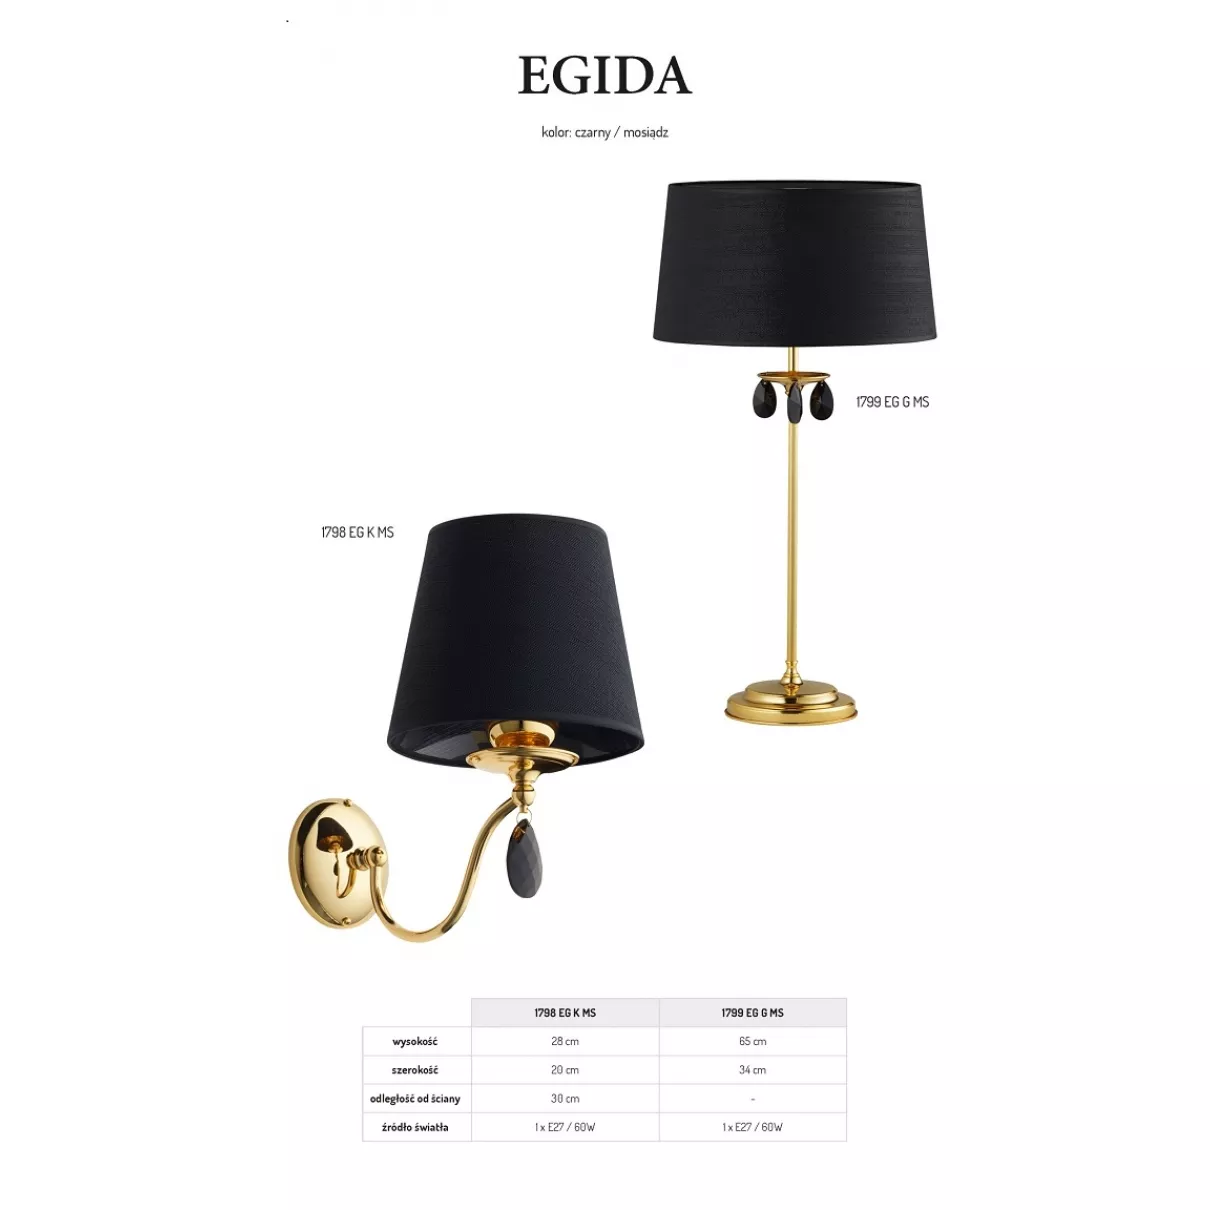 Egida - Asztali komód lámpa; 1xE27 -  Jupiter-1799 EGG ms